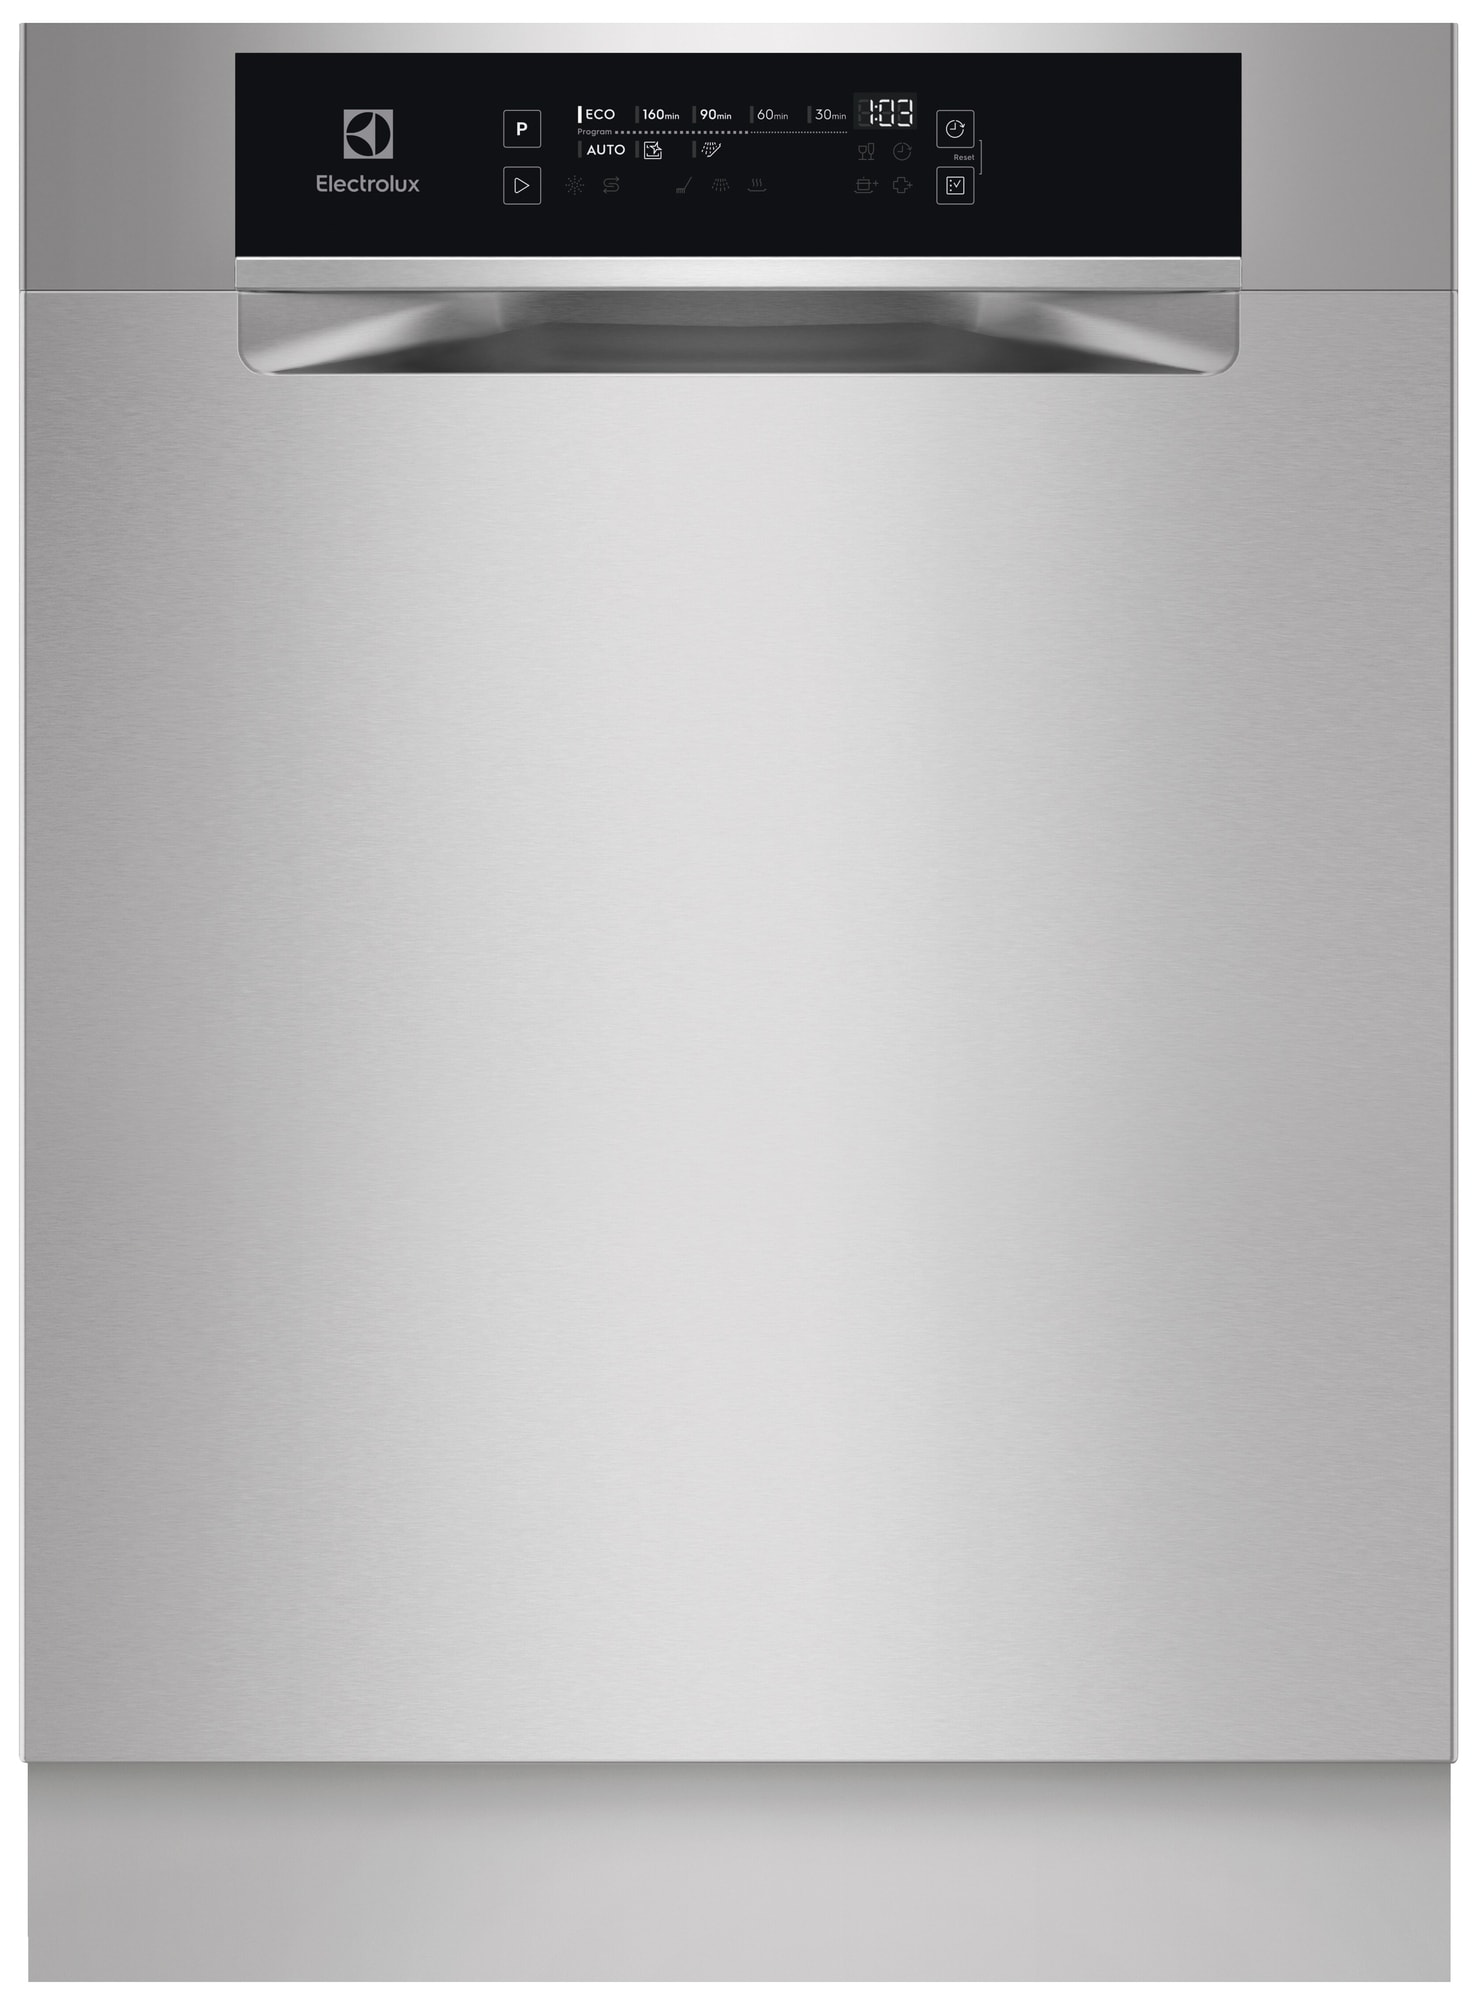 Electrolux opvaskemaskine ESG89400UX (Stål)